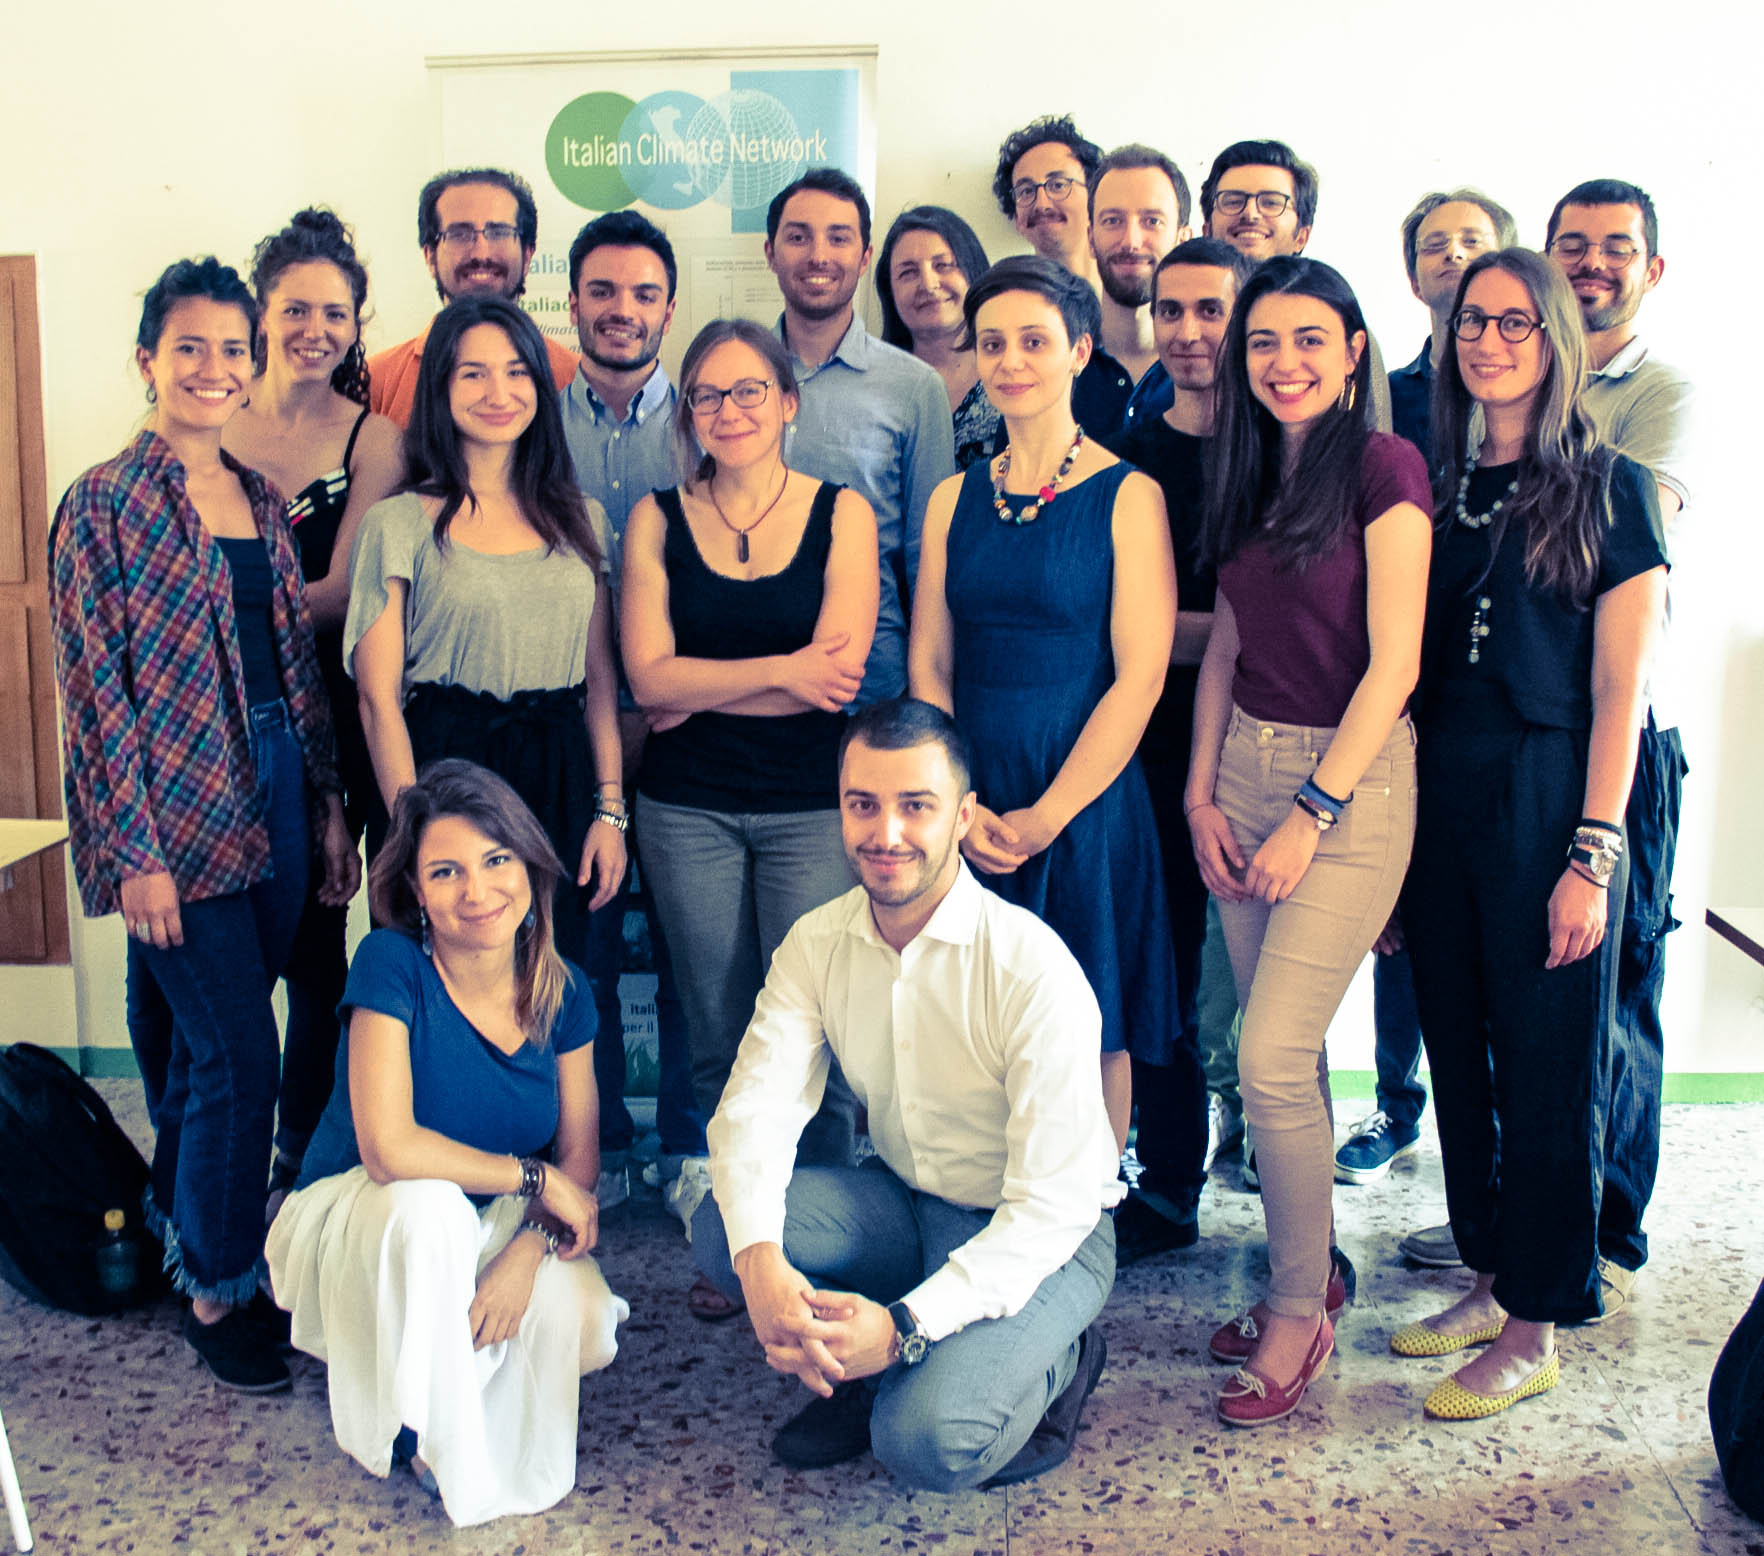 Le persone che compongono Italian Climate Network